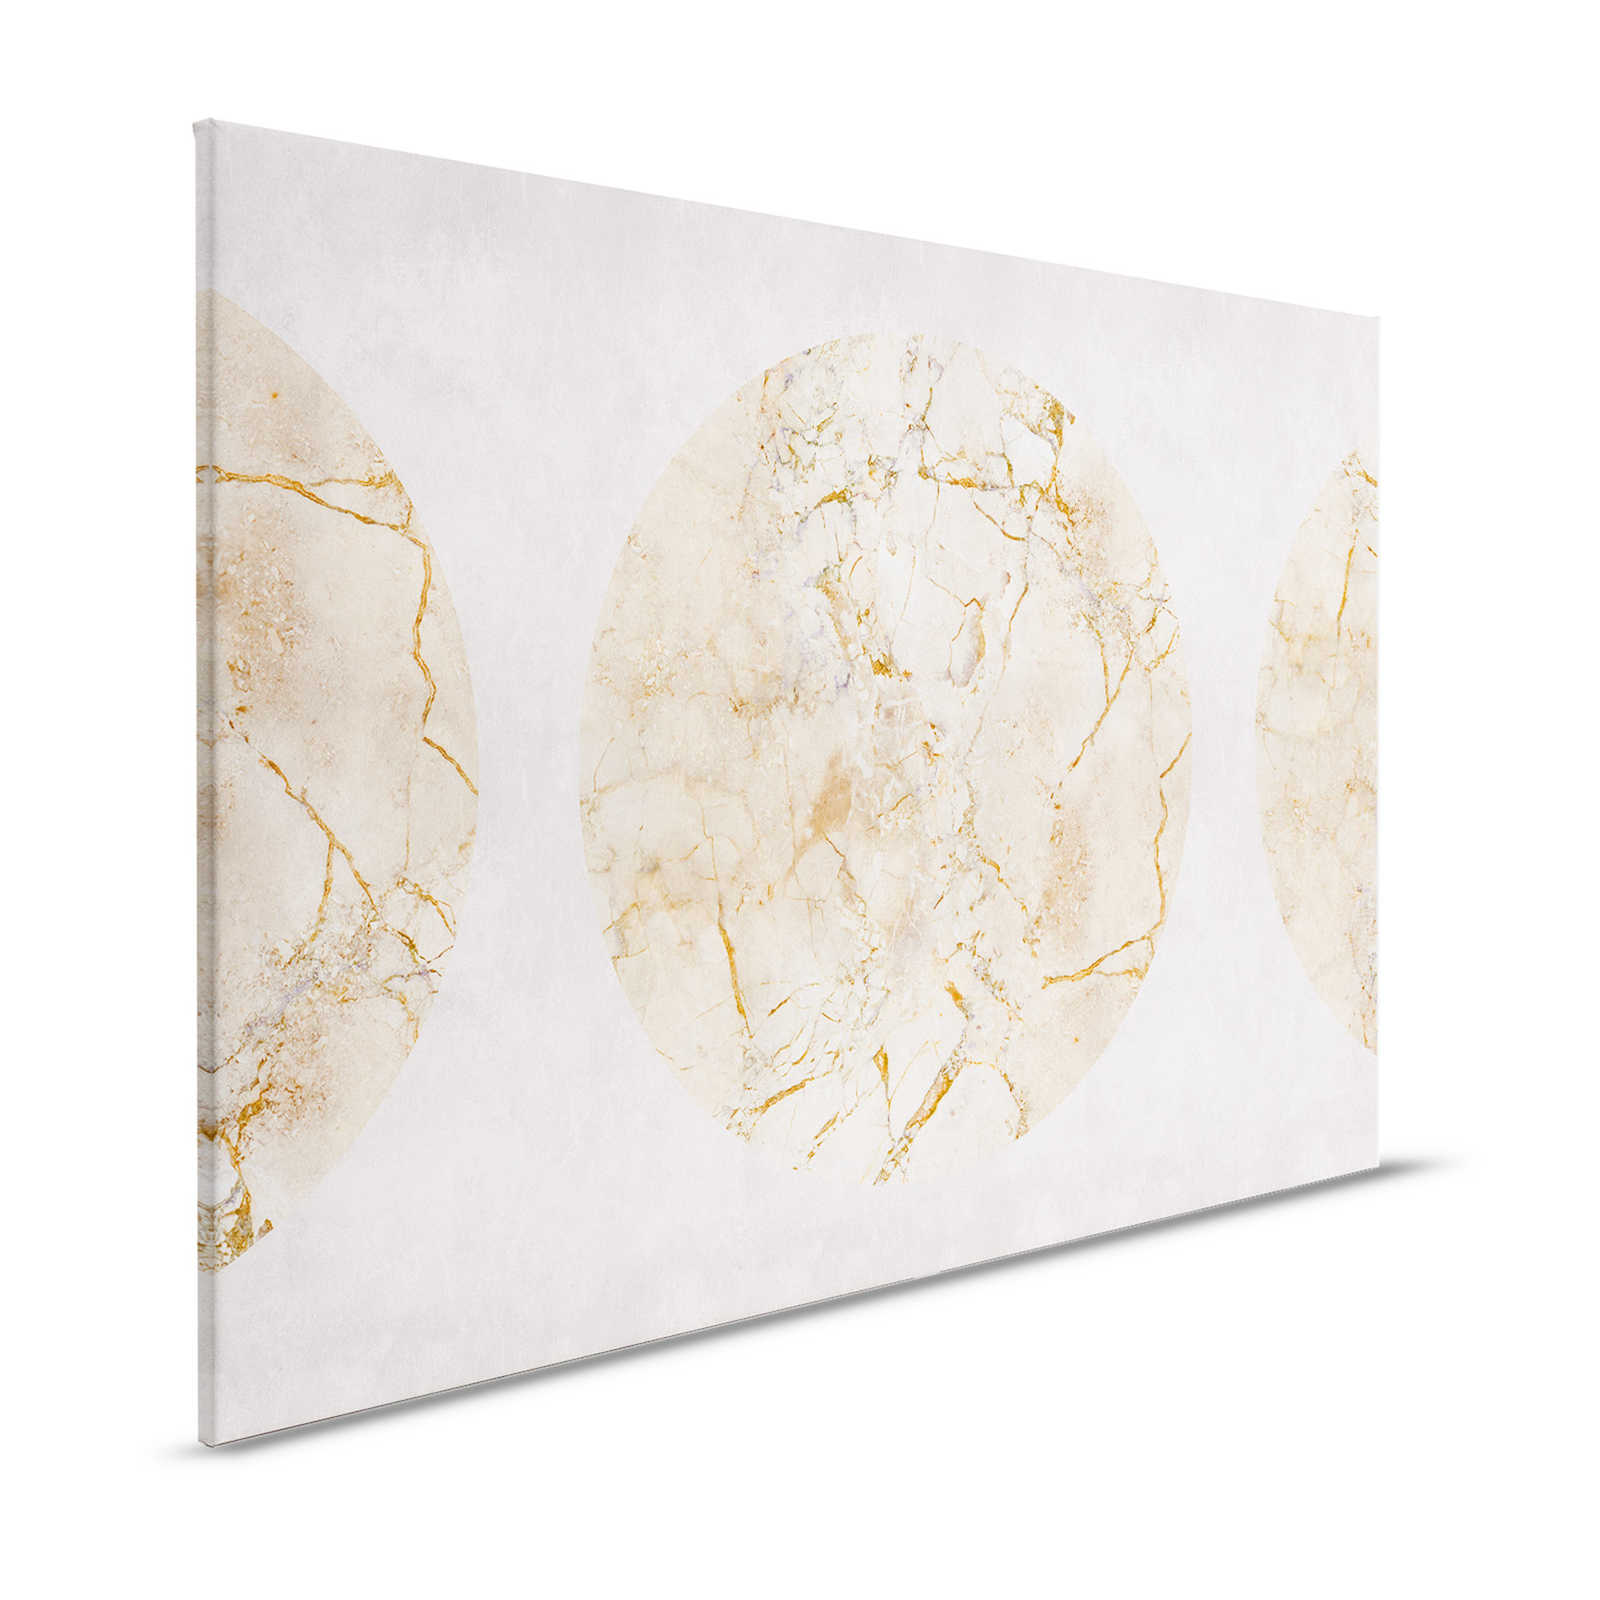 Venere 1 - Tela dipinta in marmo dorato con motivo a cerchio e aspetto in gesso - 1,20 m x 0,80 m
